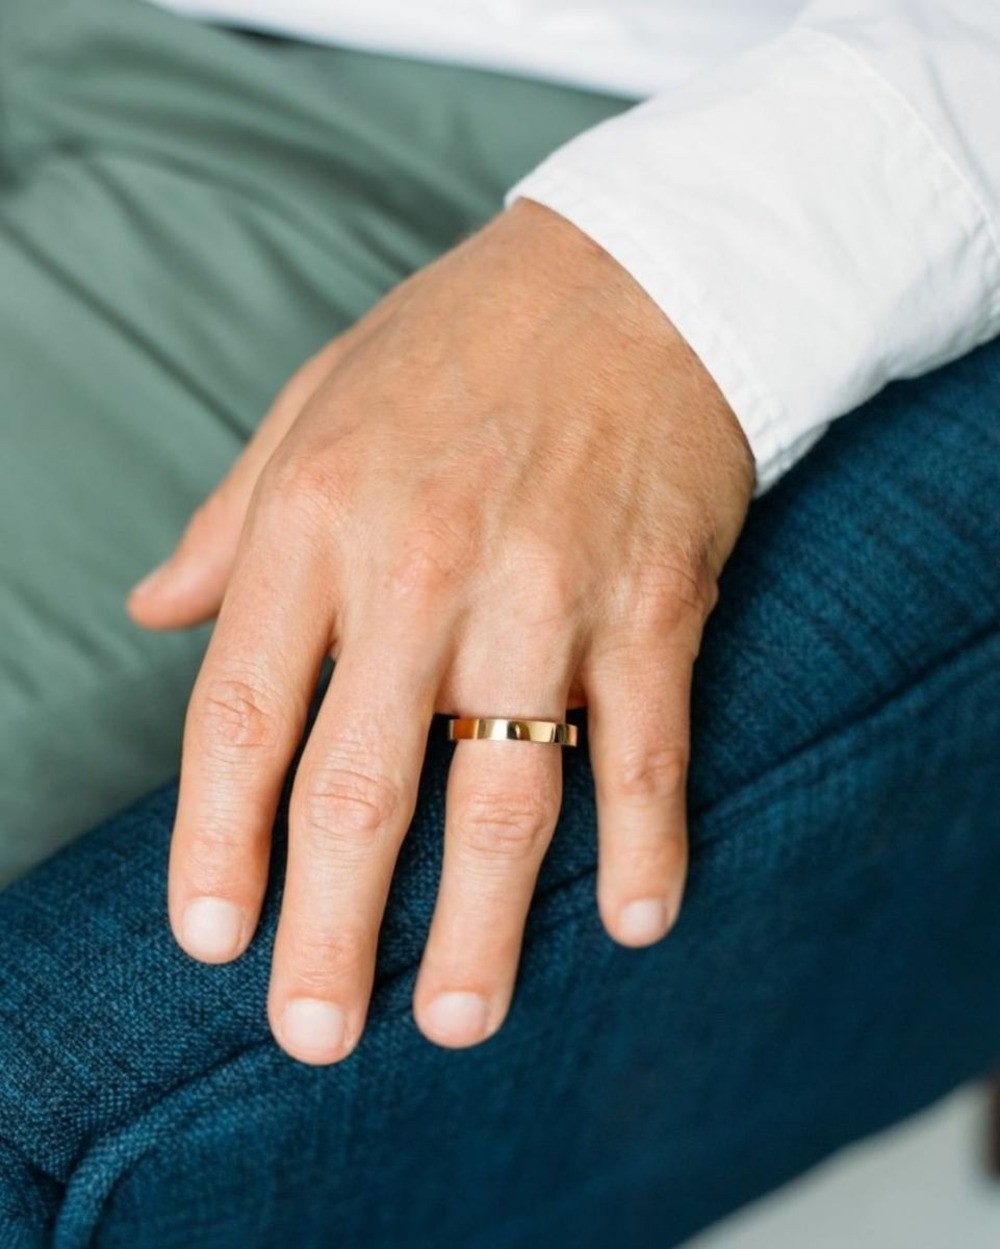 Con trai, con gái đeo nhẫn cưới tay nào? Ý nghĩa khi đeo - Ảnh 3